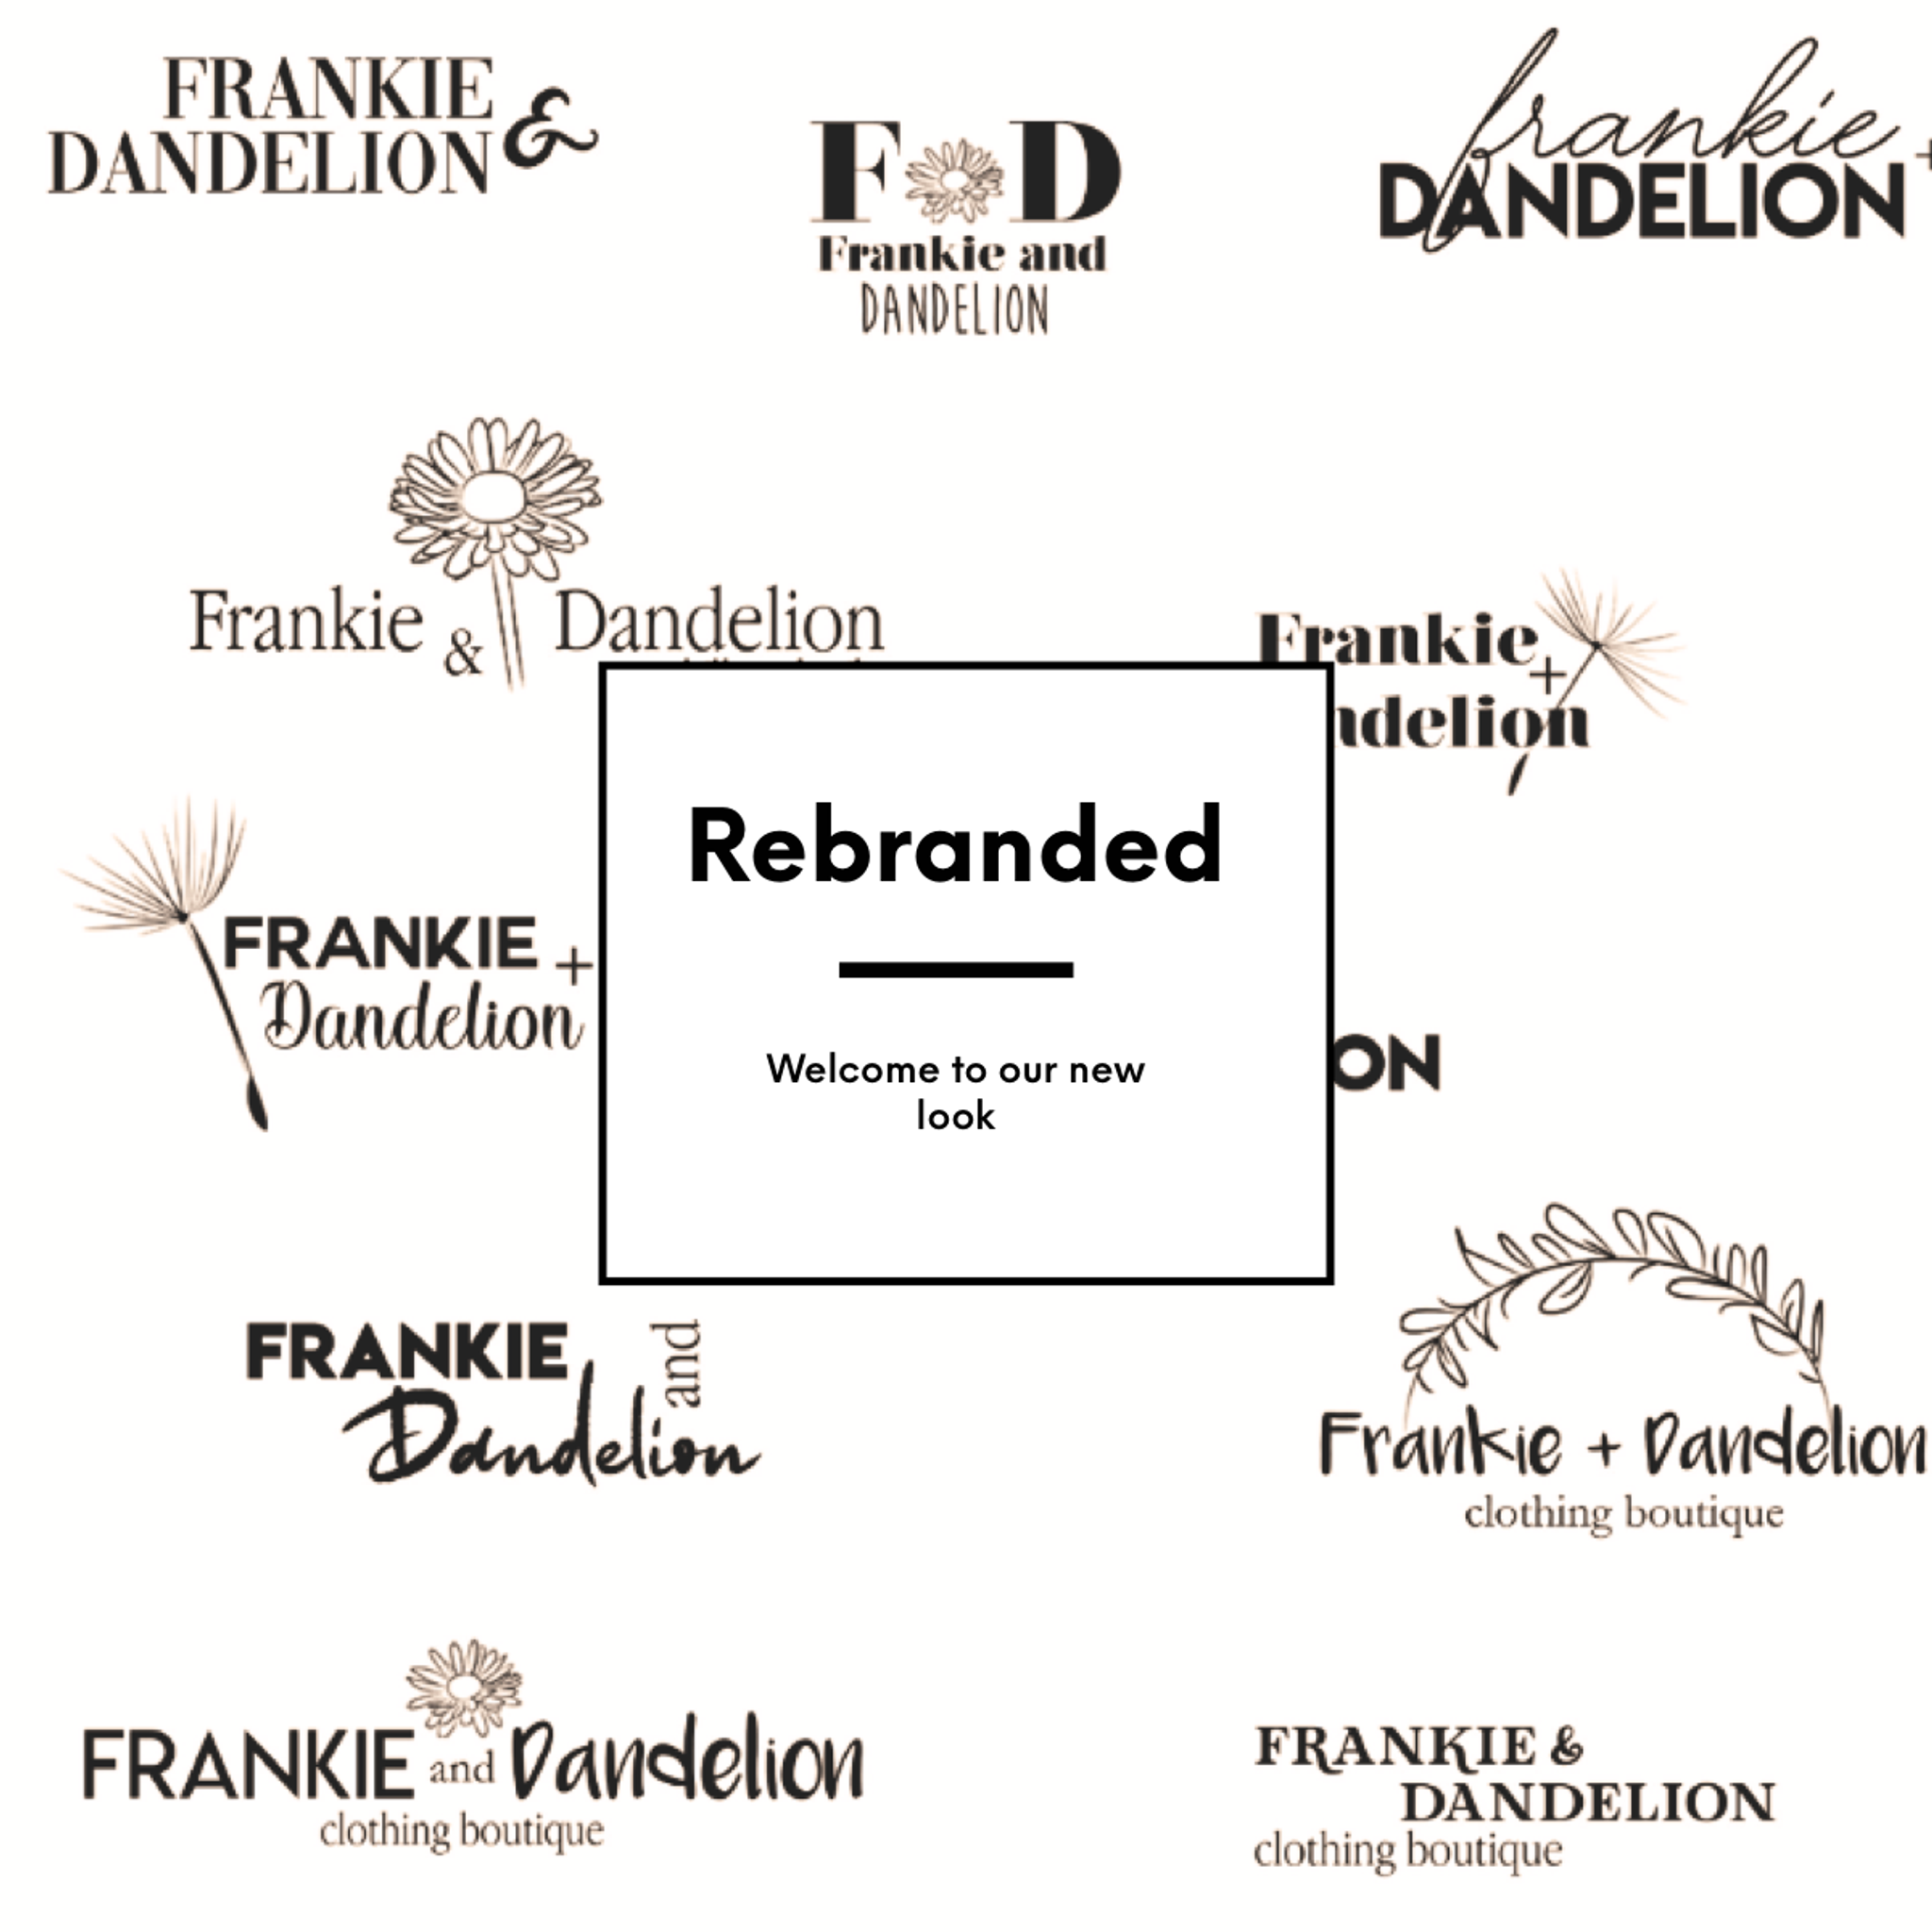 Frankie & Dandelion Rebranded